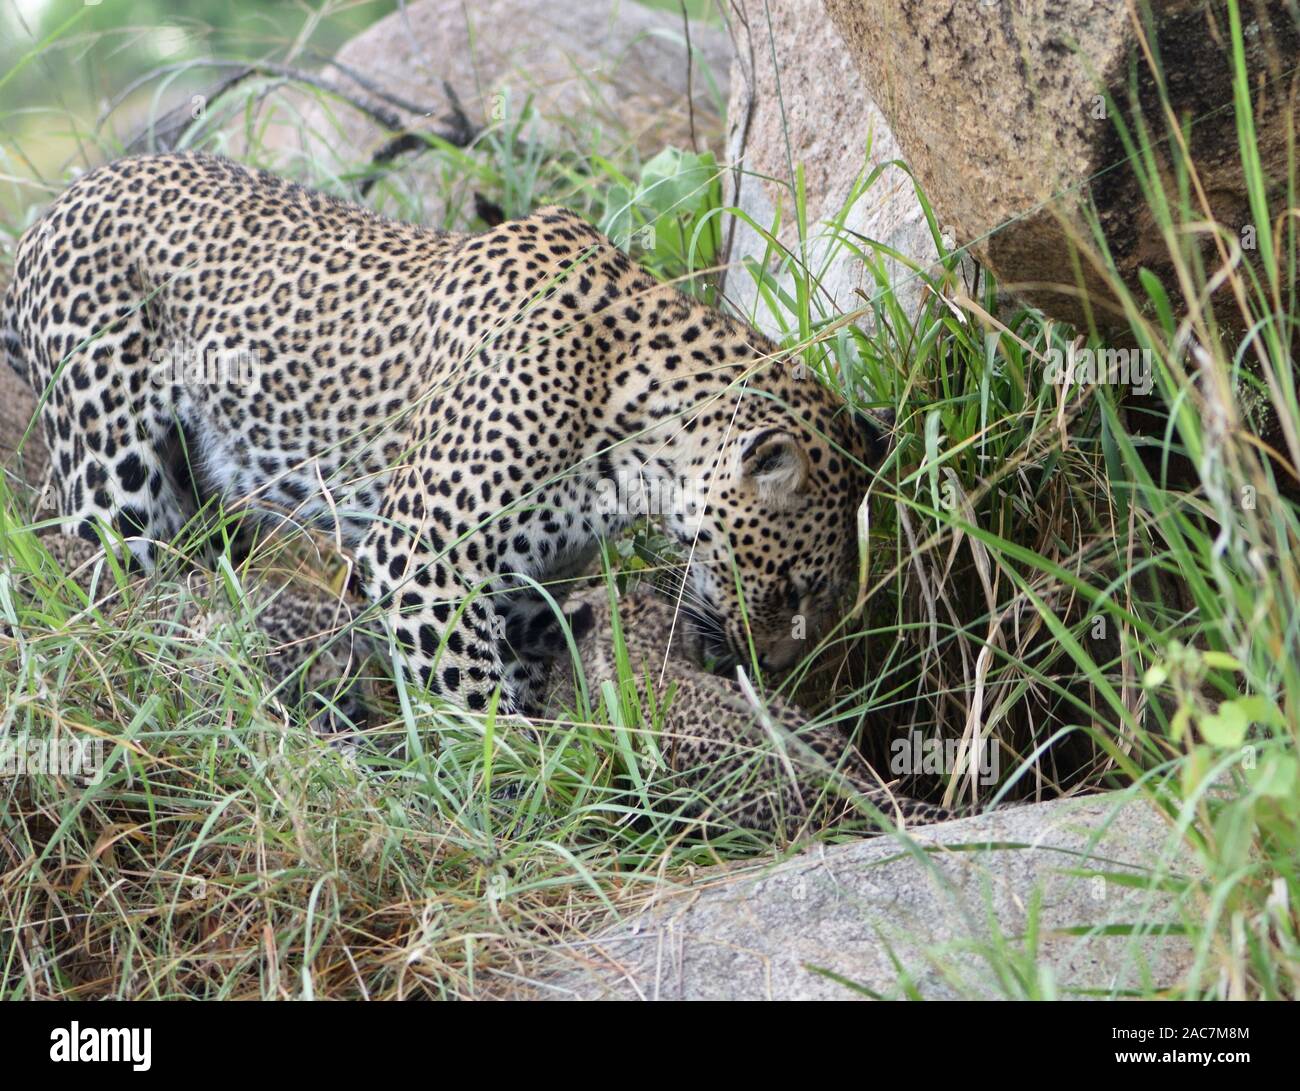 Eine weibliche Leopard (Panthera pardus) ruft ihre zwei sehr jungen Jungen, die Augen immer noch Blau, aus ihrer Höhle. Serengeti National Park, Tansania. Stockfoto